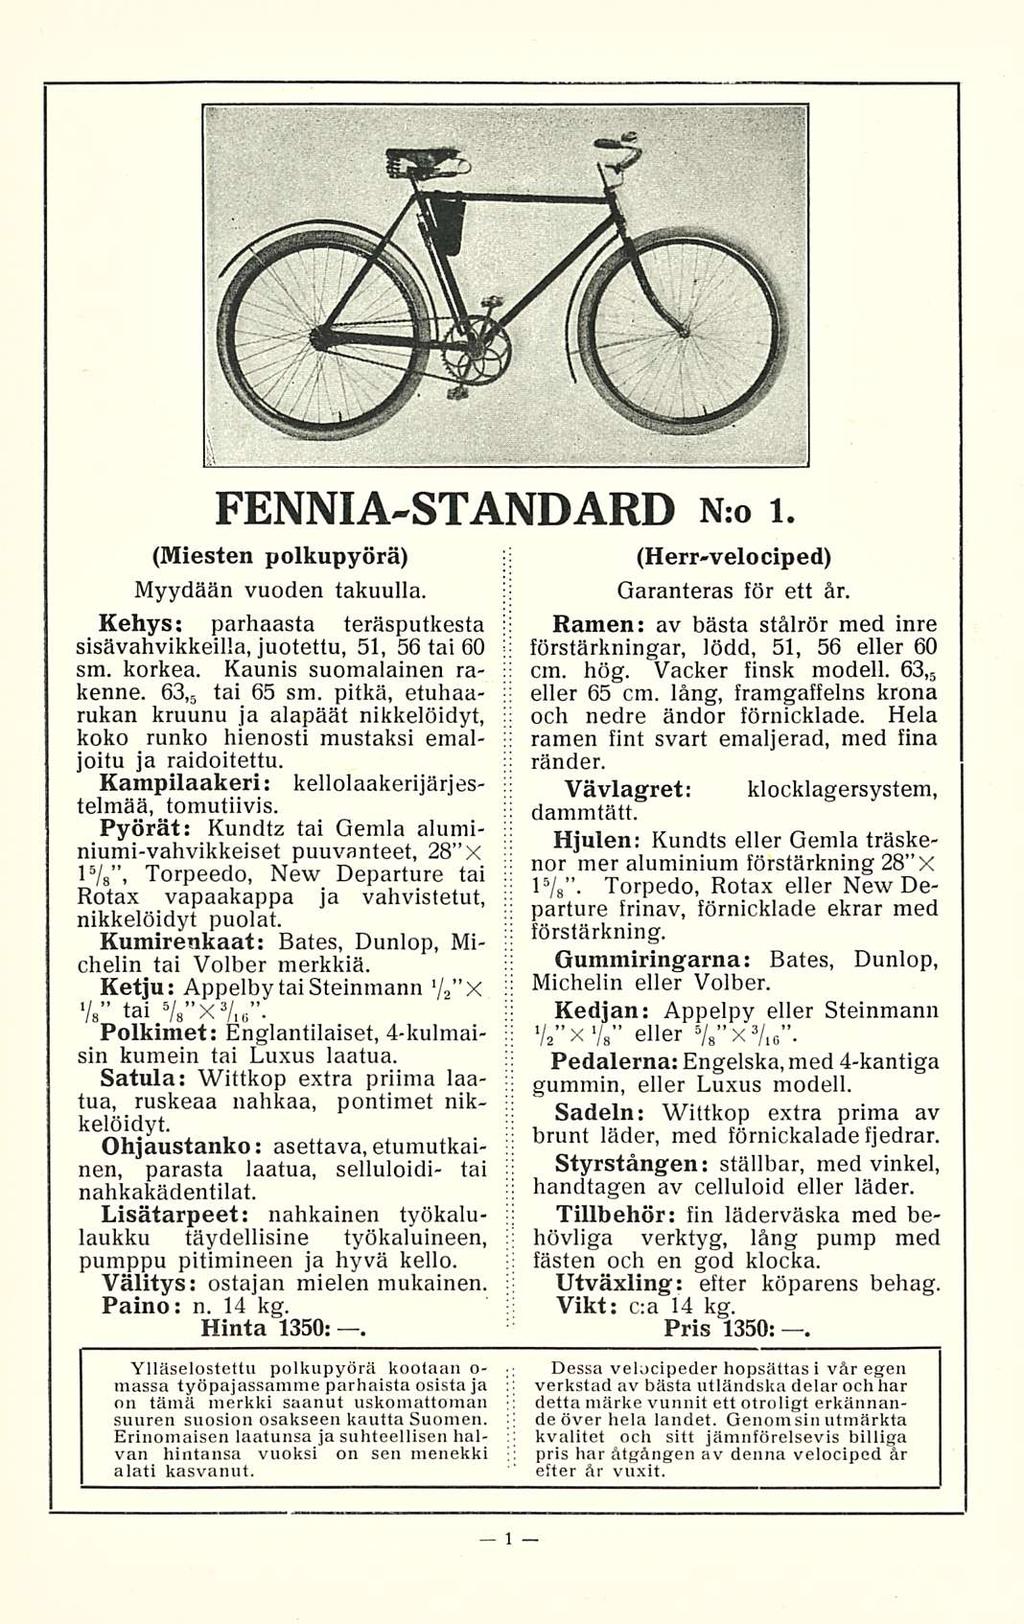 FENNIA-STANDARD N:o i. (Miesten polkupyörä) Myydään vuoden takuulla. Kehys; parhaasta teräsputkesta sisävahvikkeilla, juotettu, 51, 56 tai 60 sm. korkea. Kaunis suomalainen rakenne. 63,5 tai 65 sm.